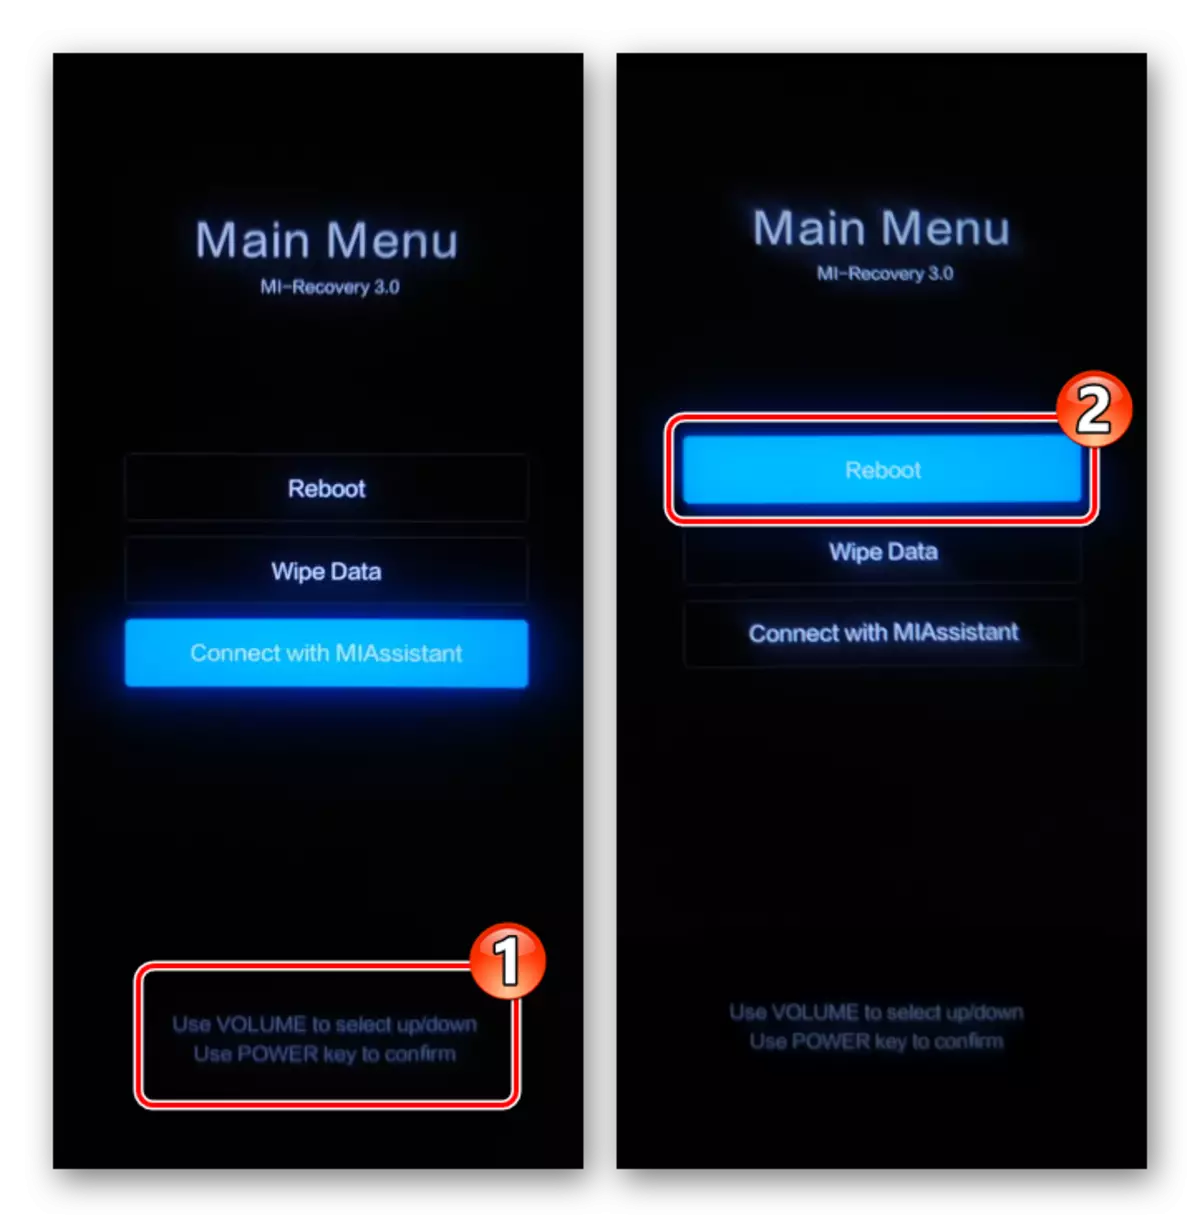 Xiaomi Miui Mien Main Meent (Үйлдвэрийн сэргэлт) - Техник хангамжийн товчлууруудыг ашиглан хянах - Дахин ачаалах функцийг сонгоно уу